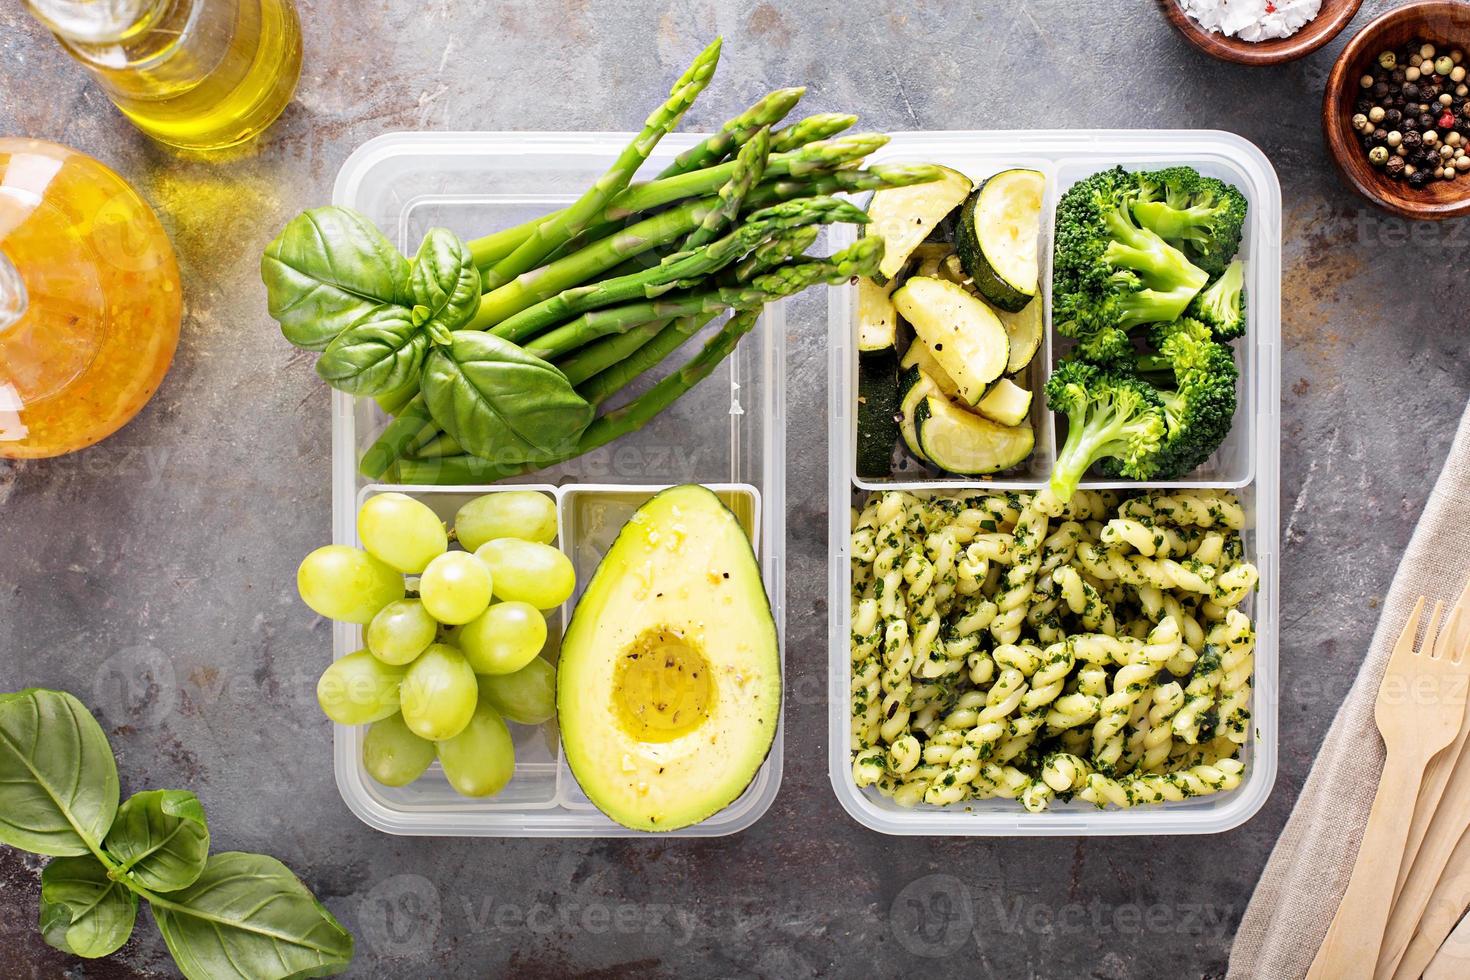 recipientes de preparação de refeições veganas com macarrão e legumes foto